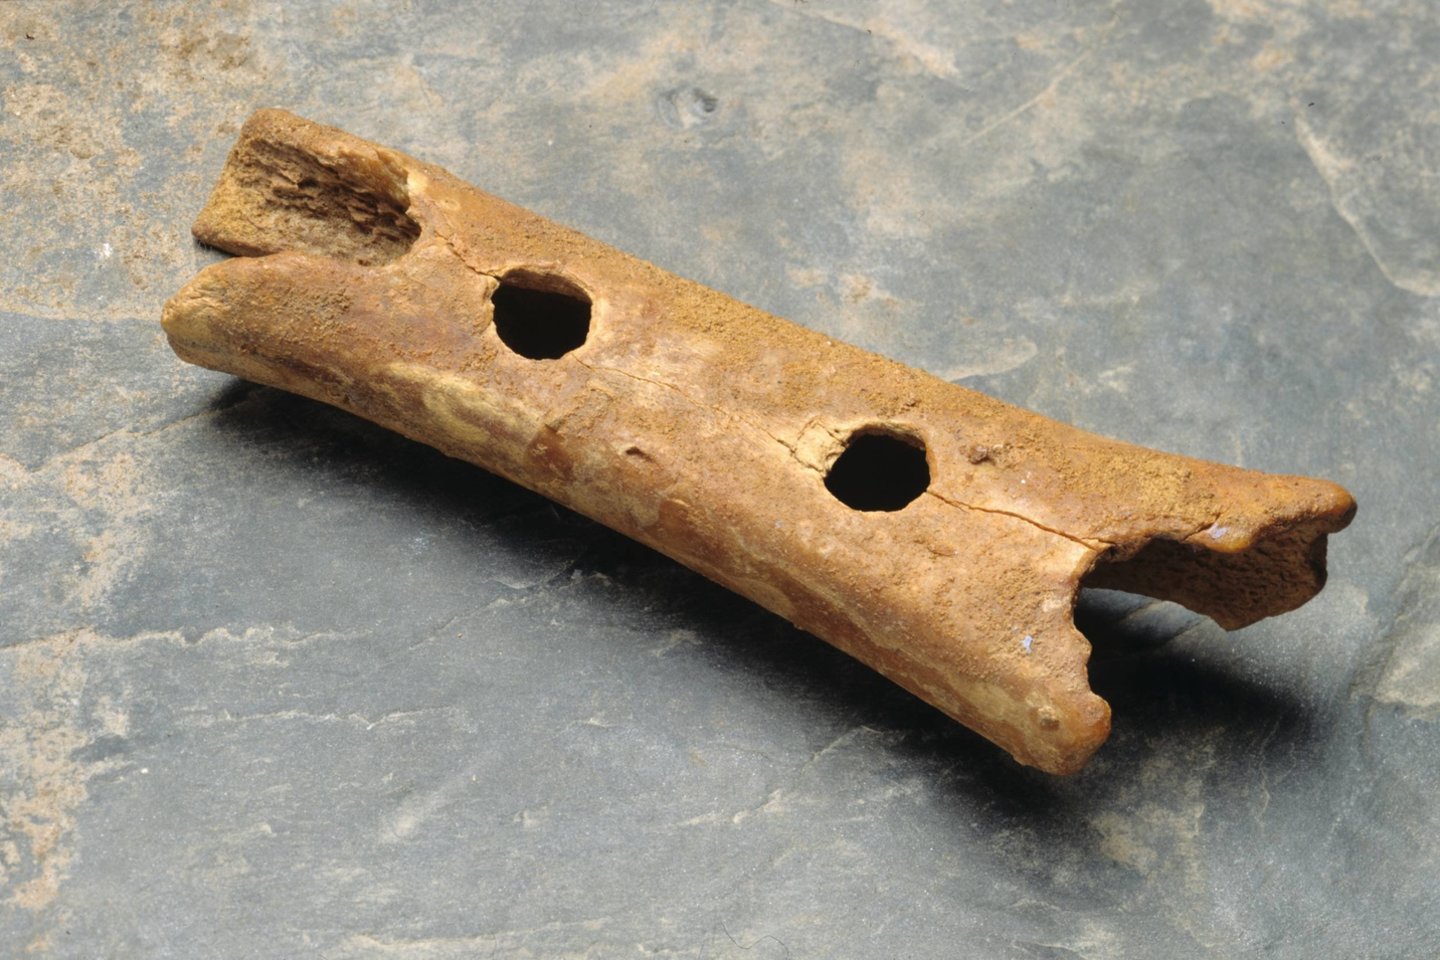  Seniausias pasaulyje žinomas muzikos instrumentas - 60 000 metų senumo neandertaliečio fleita.<br> Slovėnijos nacionalinio muziejaus nuotr.